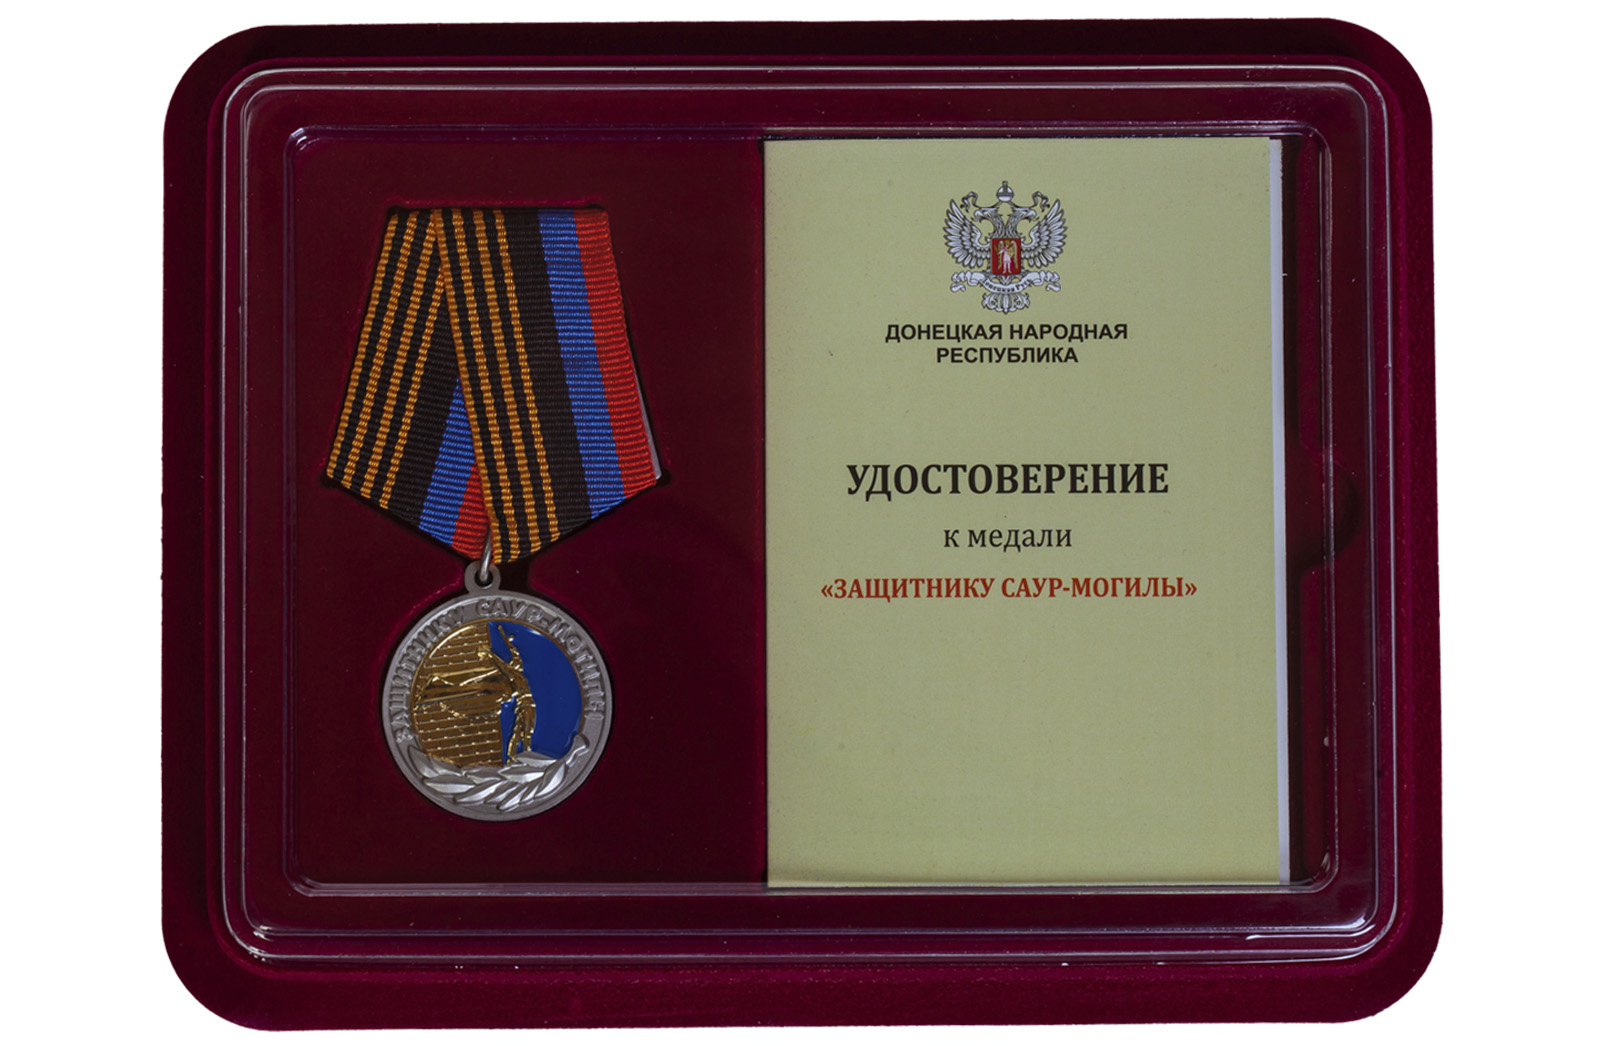 Купить медаль Защитнику Саур-Могилы ДНР по лучшей цене